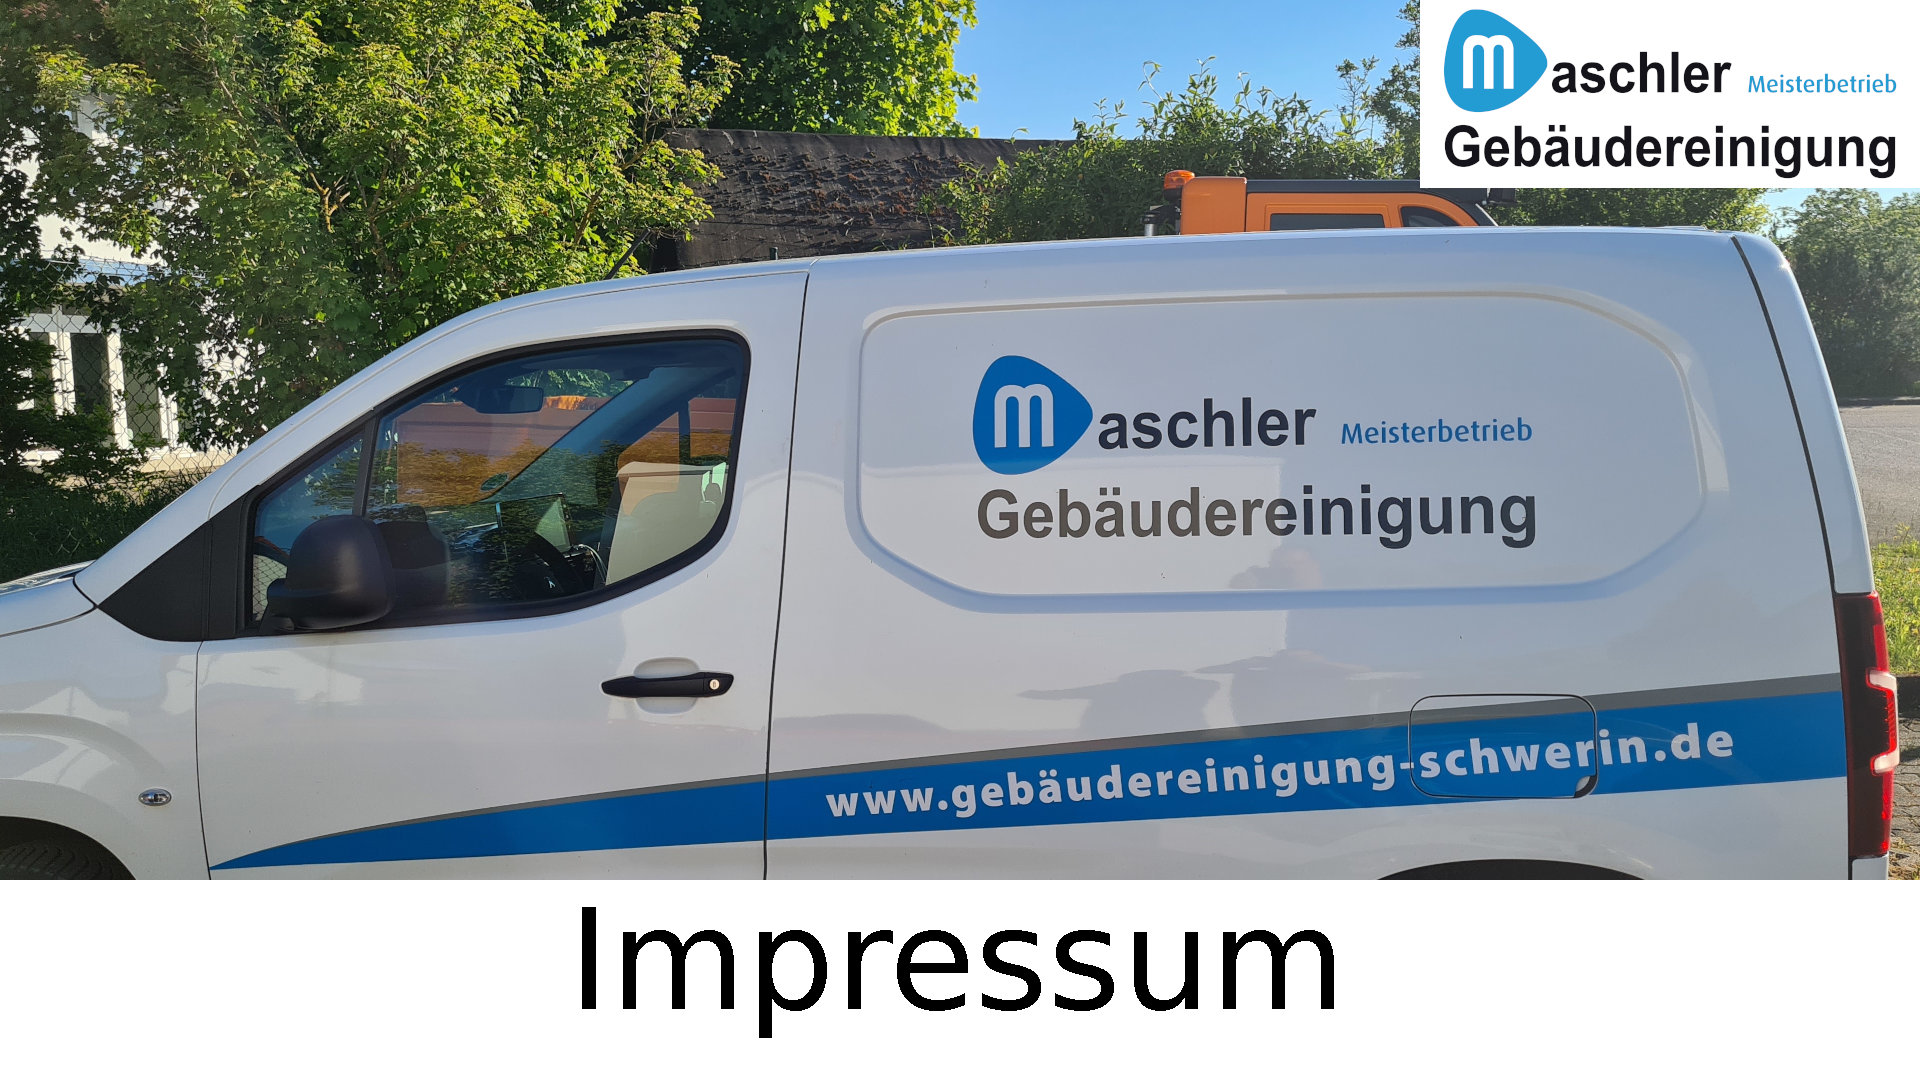 Impressum - Gebäudereinigung Maschler GmbH Schwerin